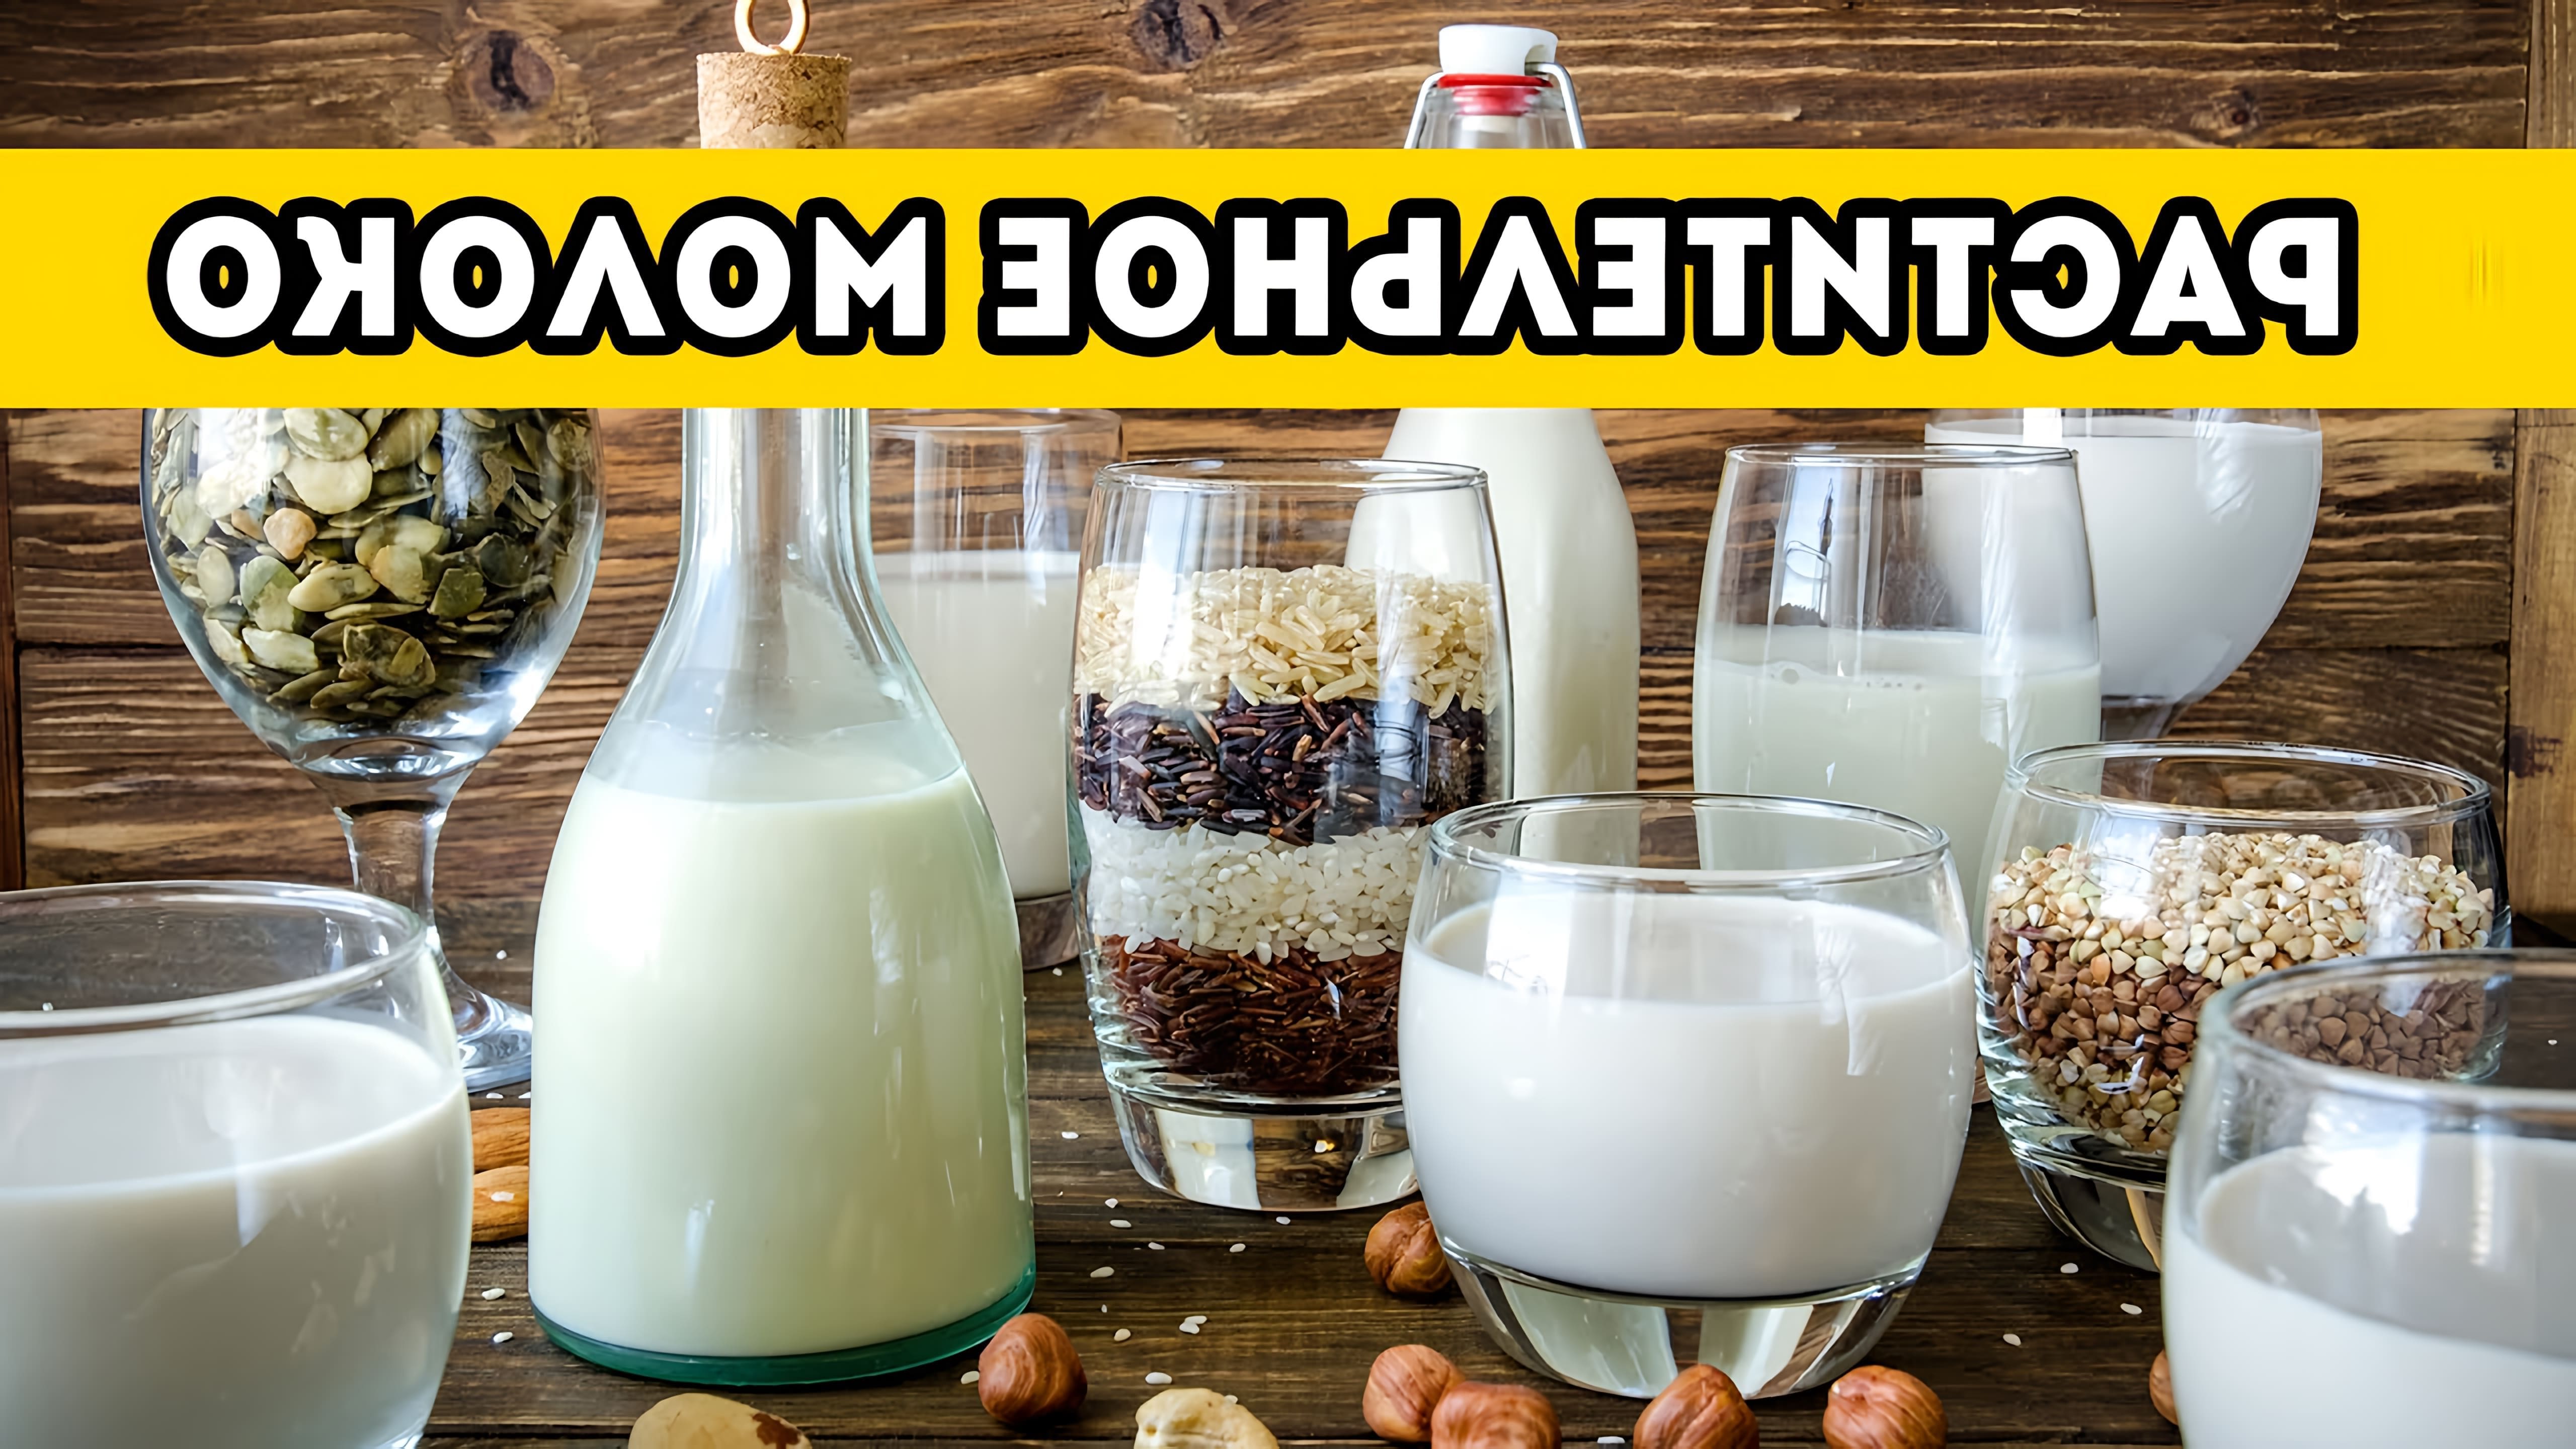 В этом видео Галина Артеменко рассказывает о двух способах приготовления растительного орехового молока из любых орехов